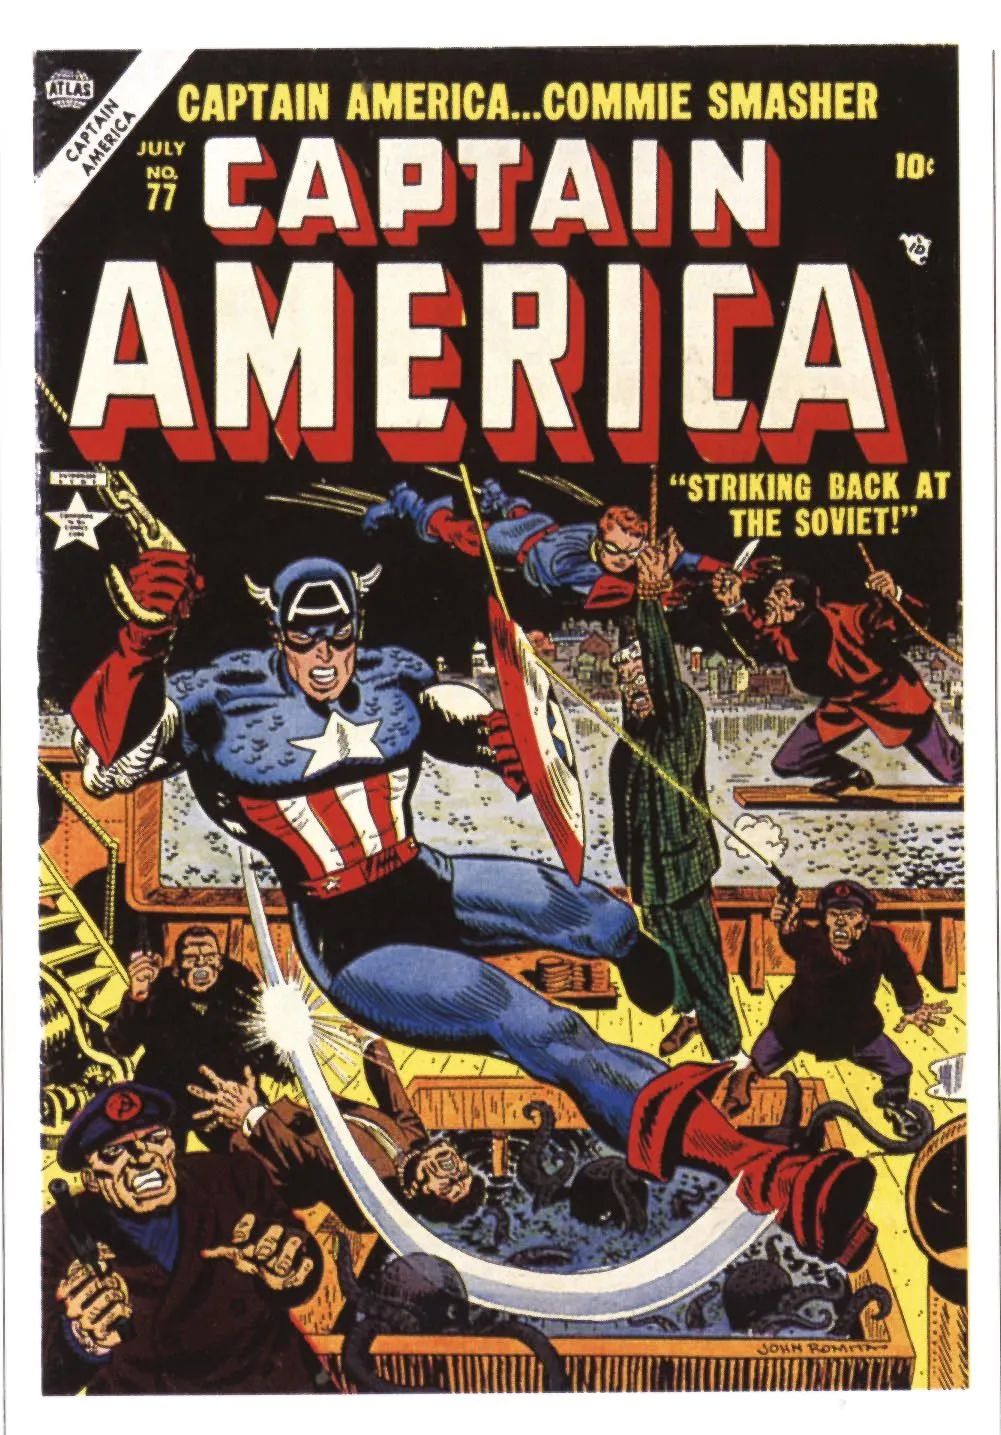 Couverture du comics (bande dessinée) américain Captain America... Commie smasher (« écraseur de communistes »), septembre 1954.